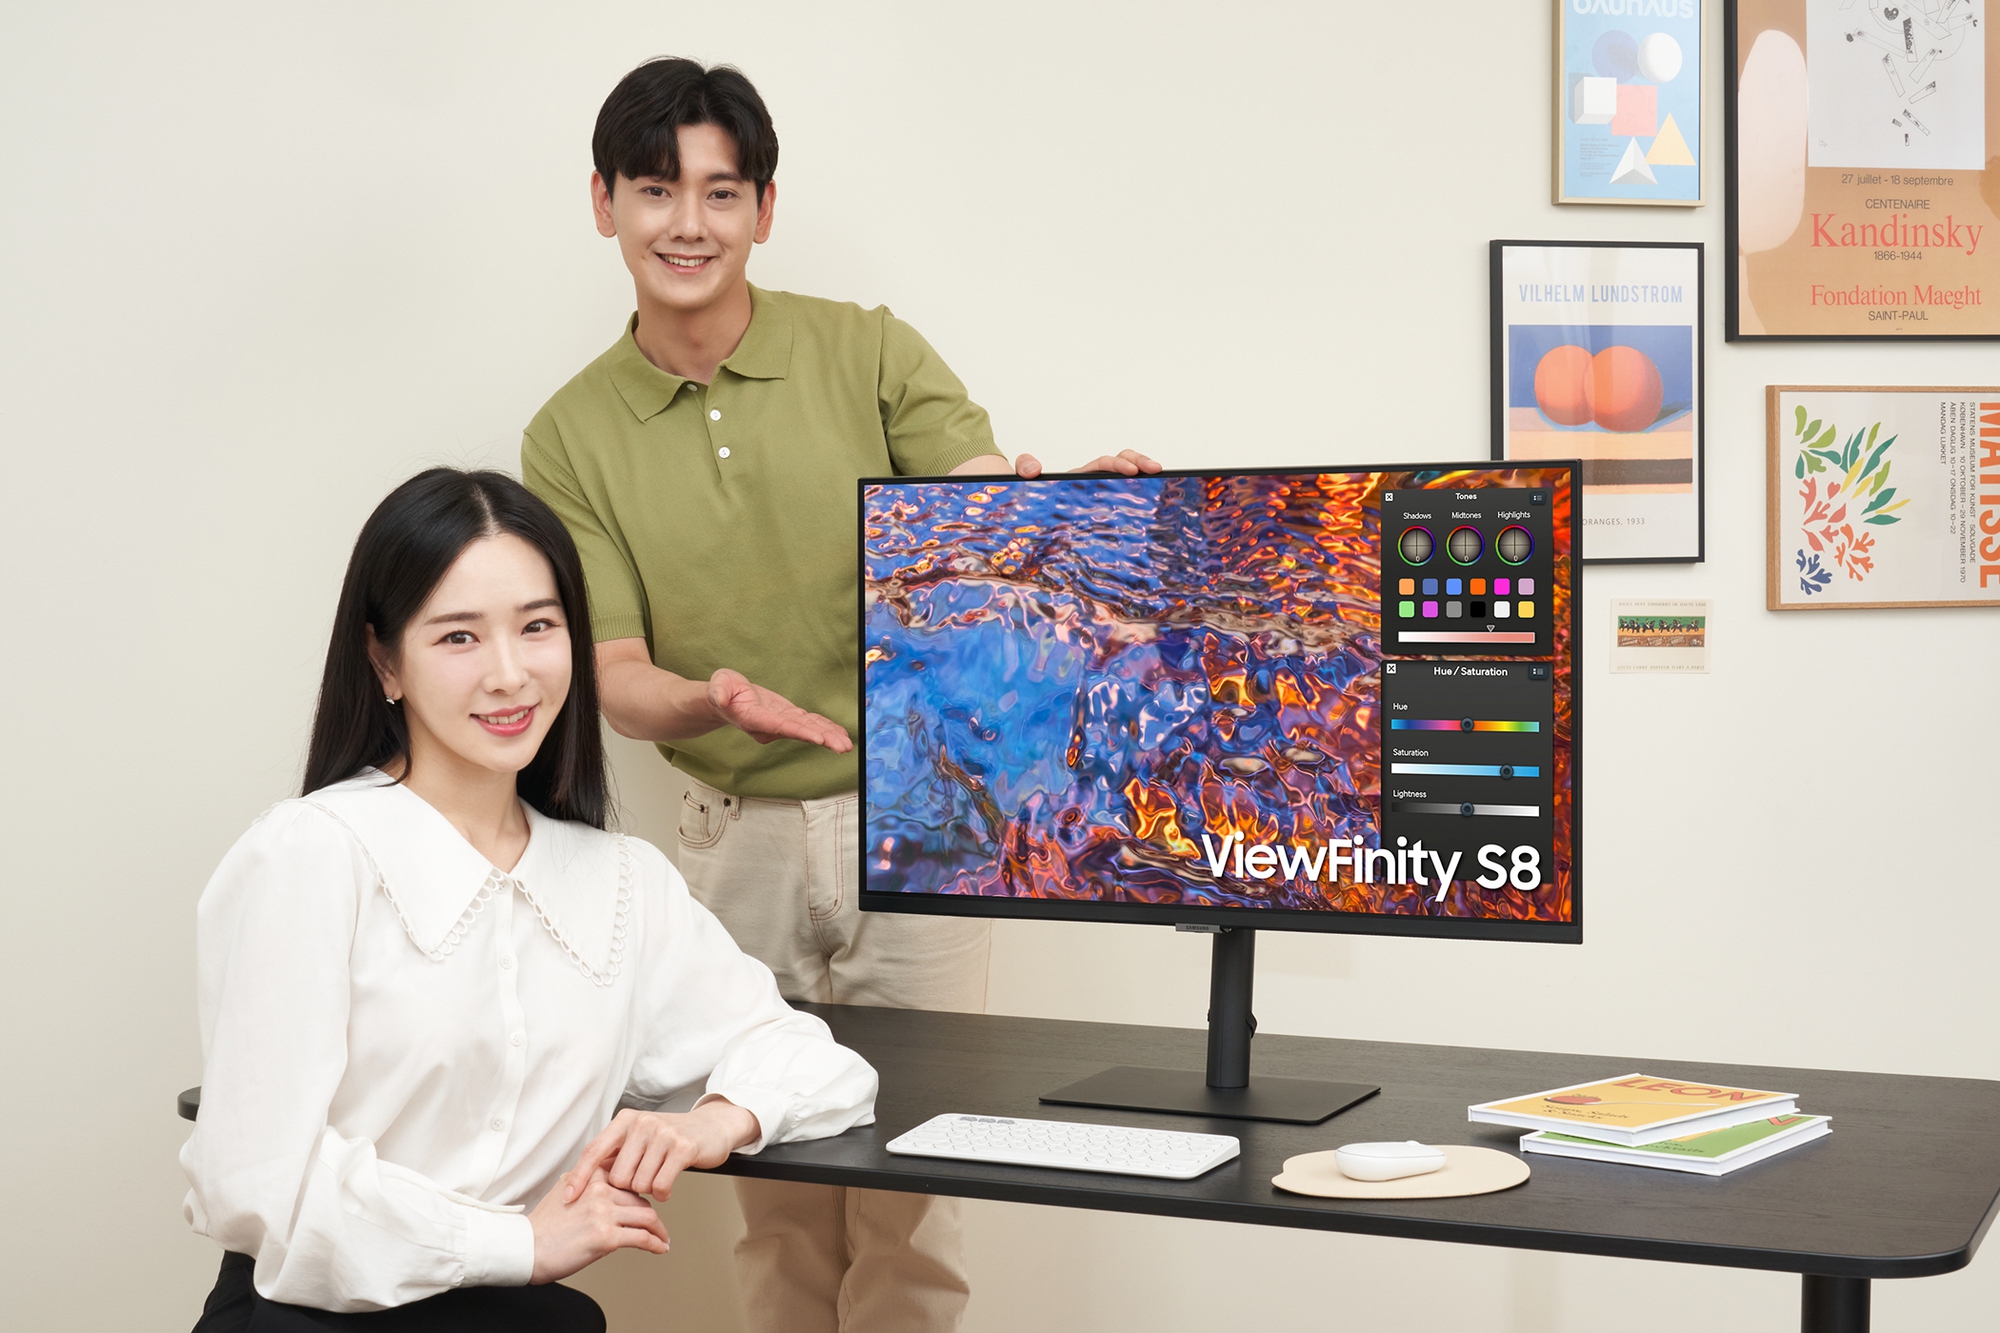 Samsung UR55 và Viewfinity S8: 2 mẫu màn hình đồ họa của Samsung dành cho người mới bắt đầu - Ảnh 2.